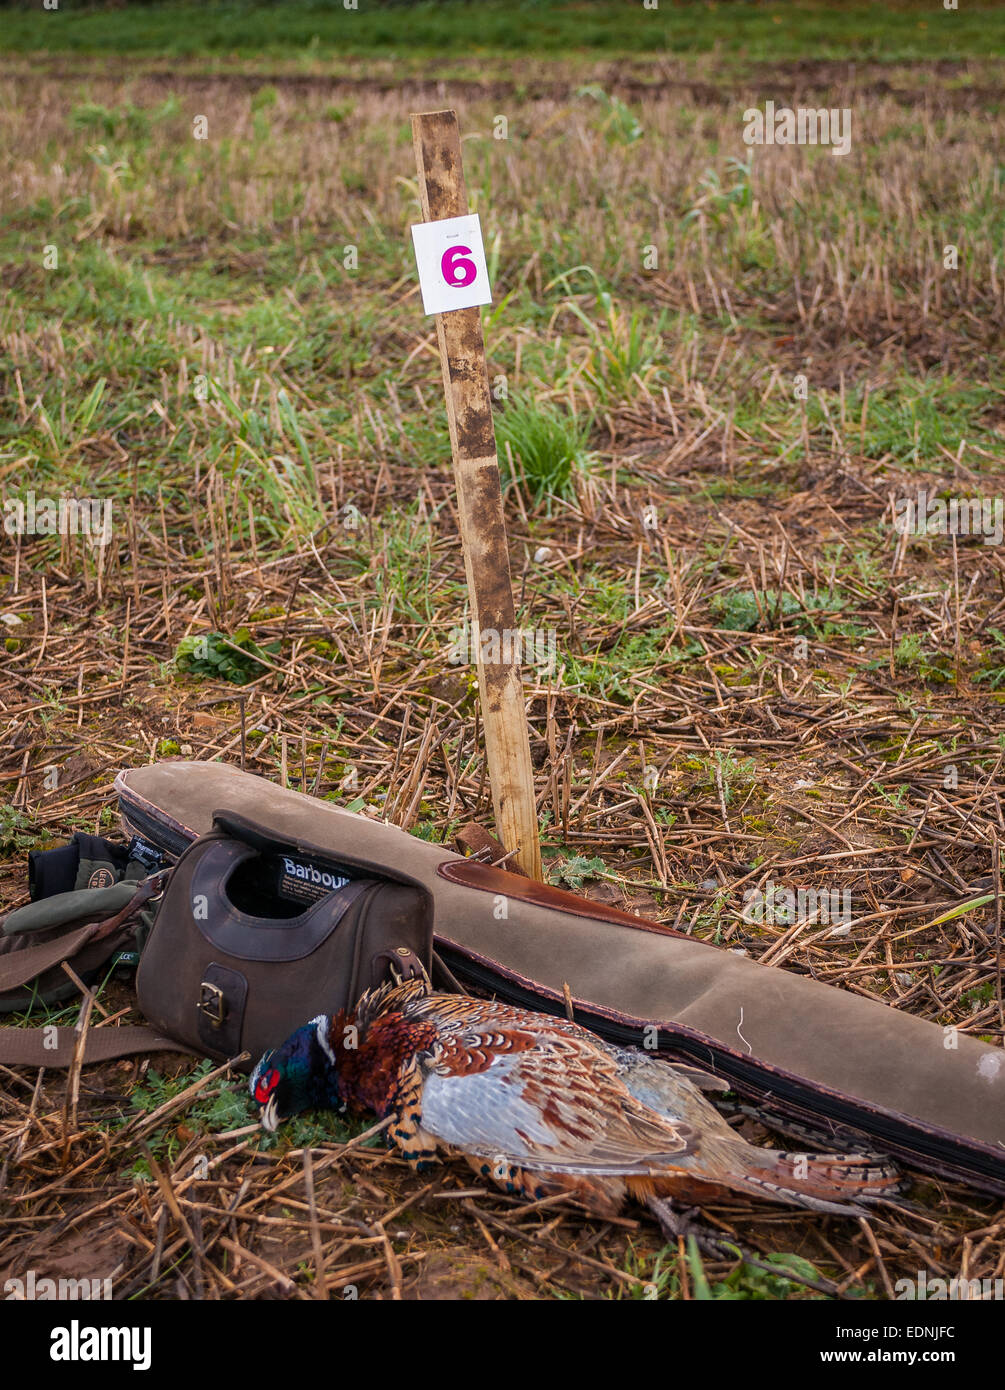 Ein schießen Peg auf einem typischen englischen angetriebenen schießen mit einem Gewehr Slip Patrone Tasche und Fasan, alle Peg Hausnummer 6 Stockfoto